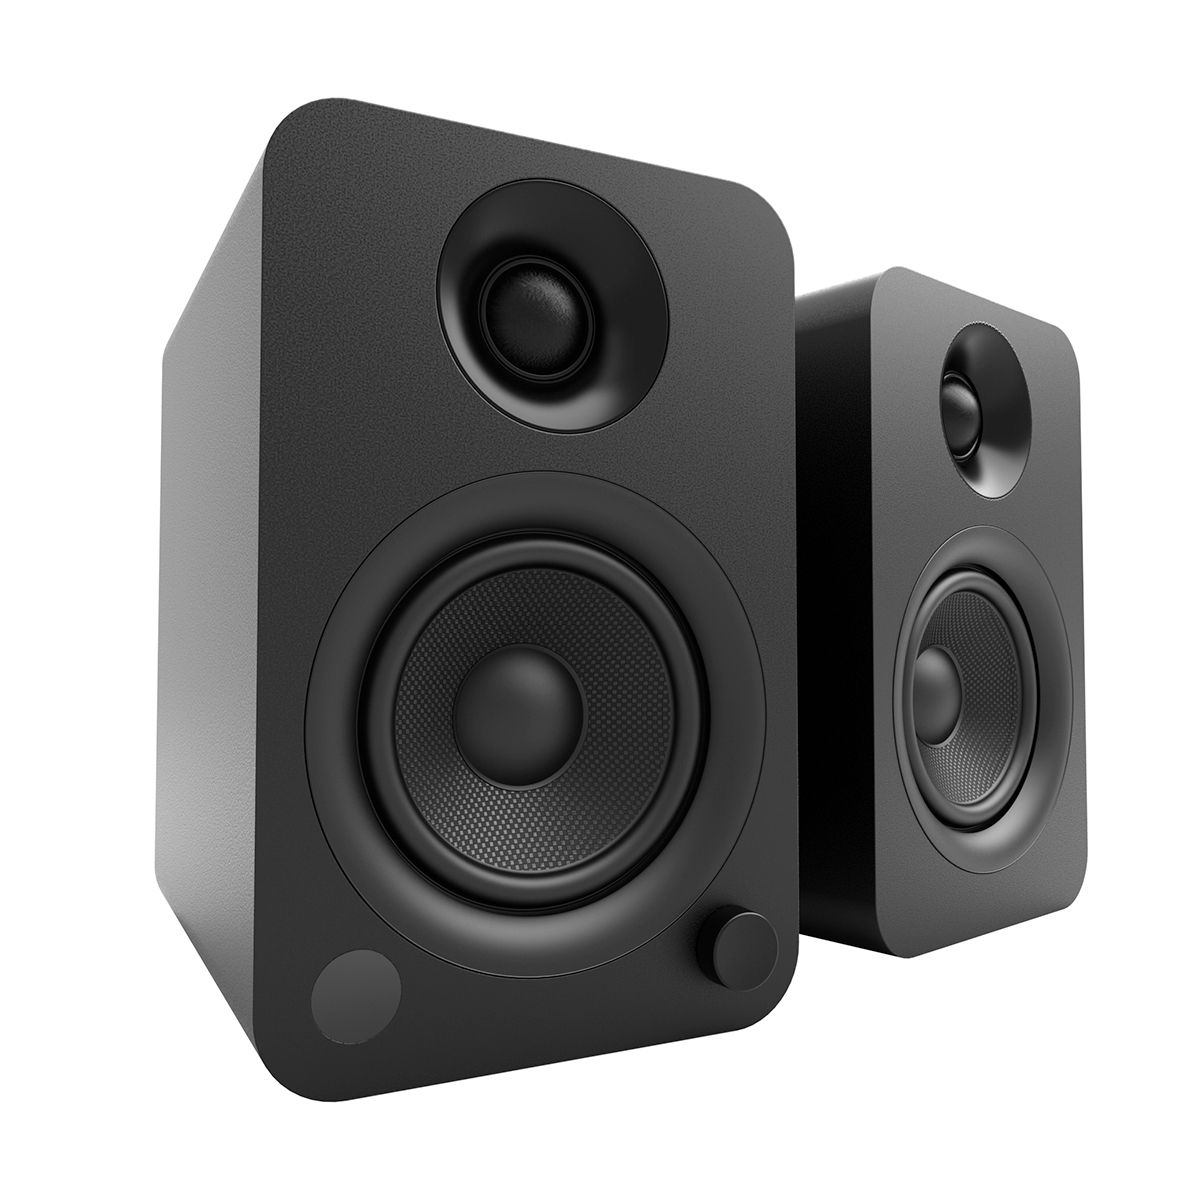 Kanto YU Powered Desktop Speakers - Pair - Black